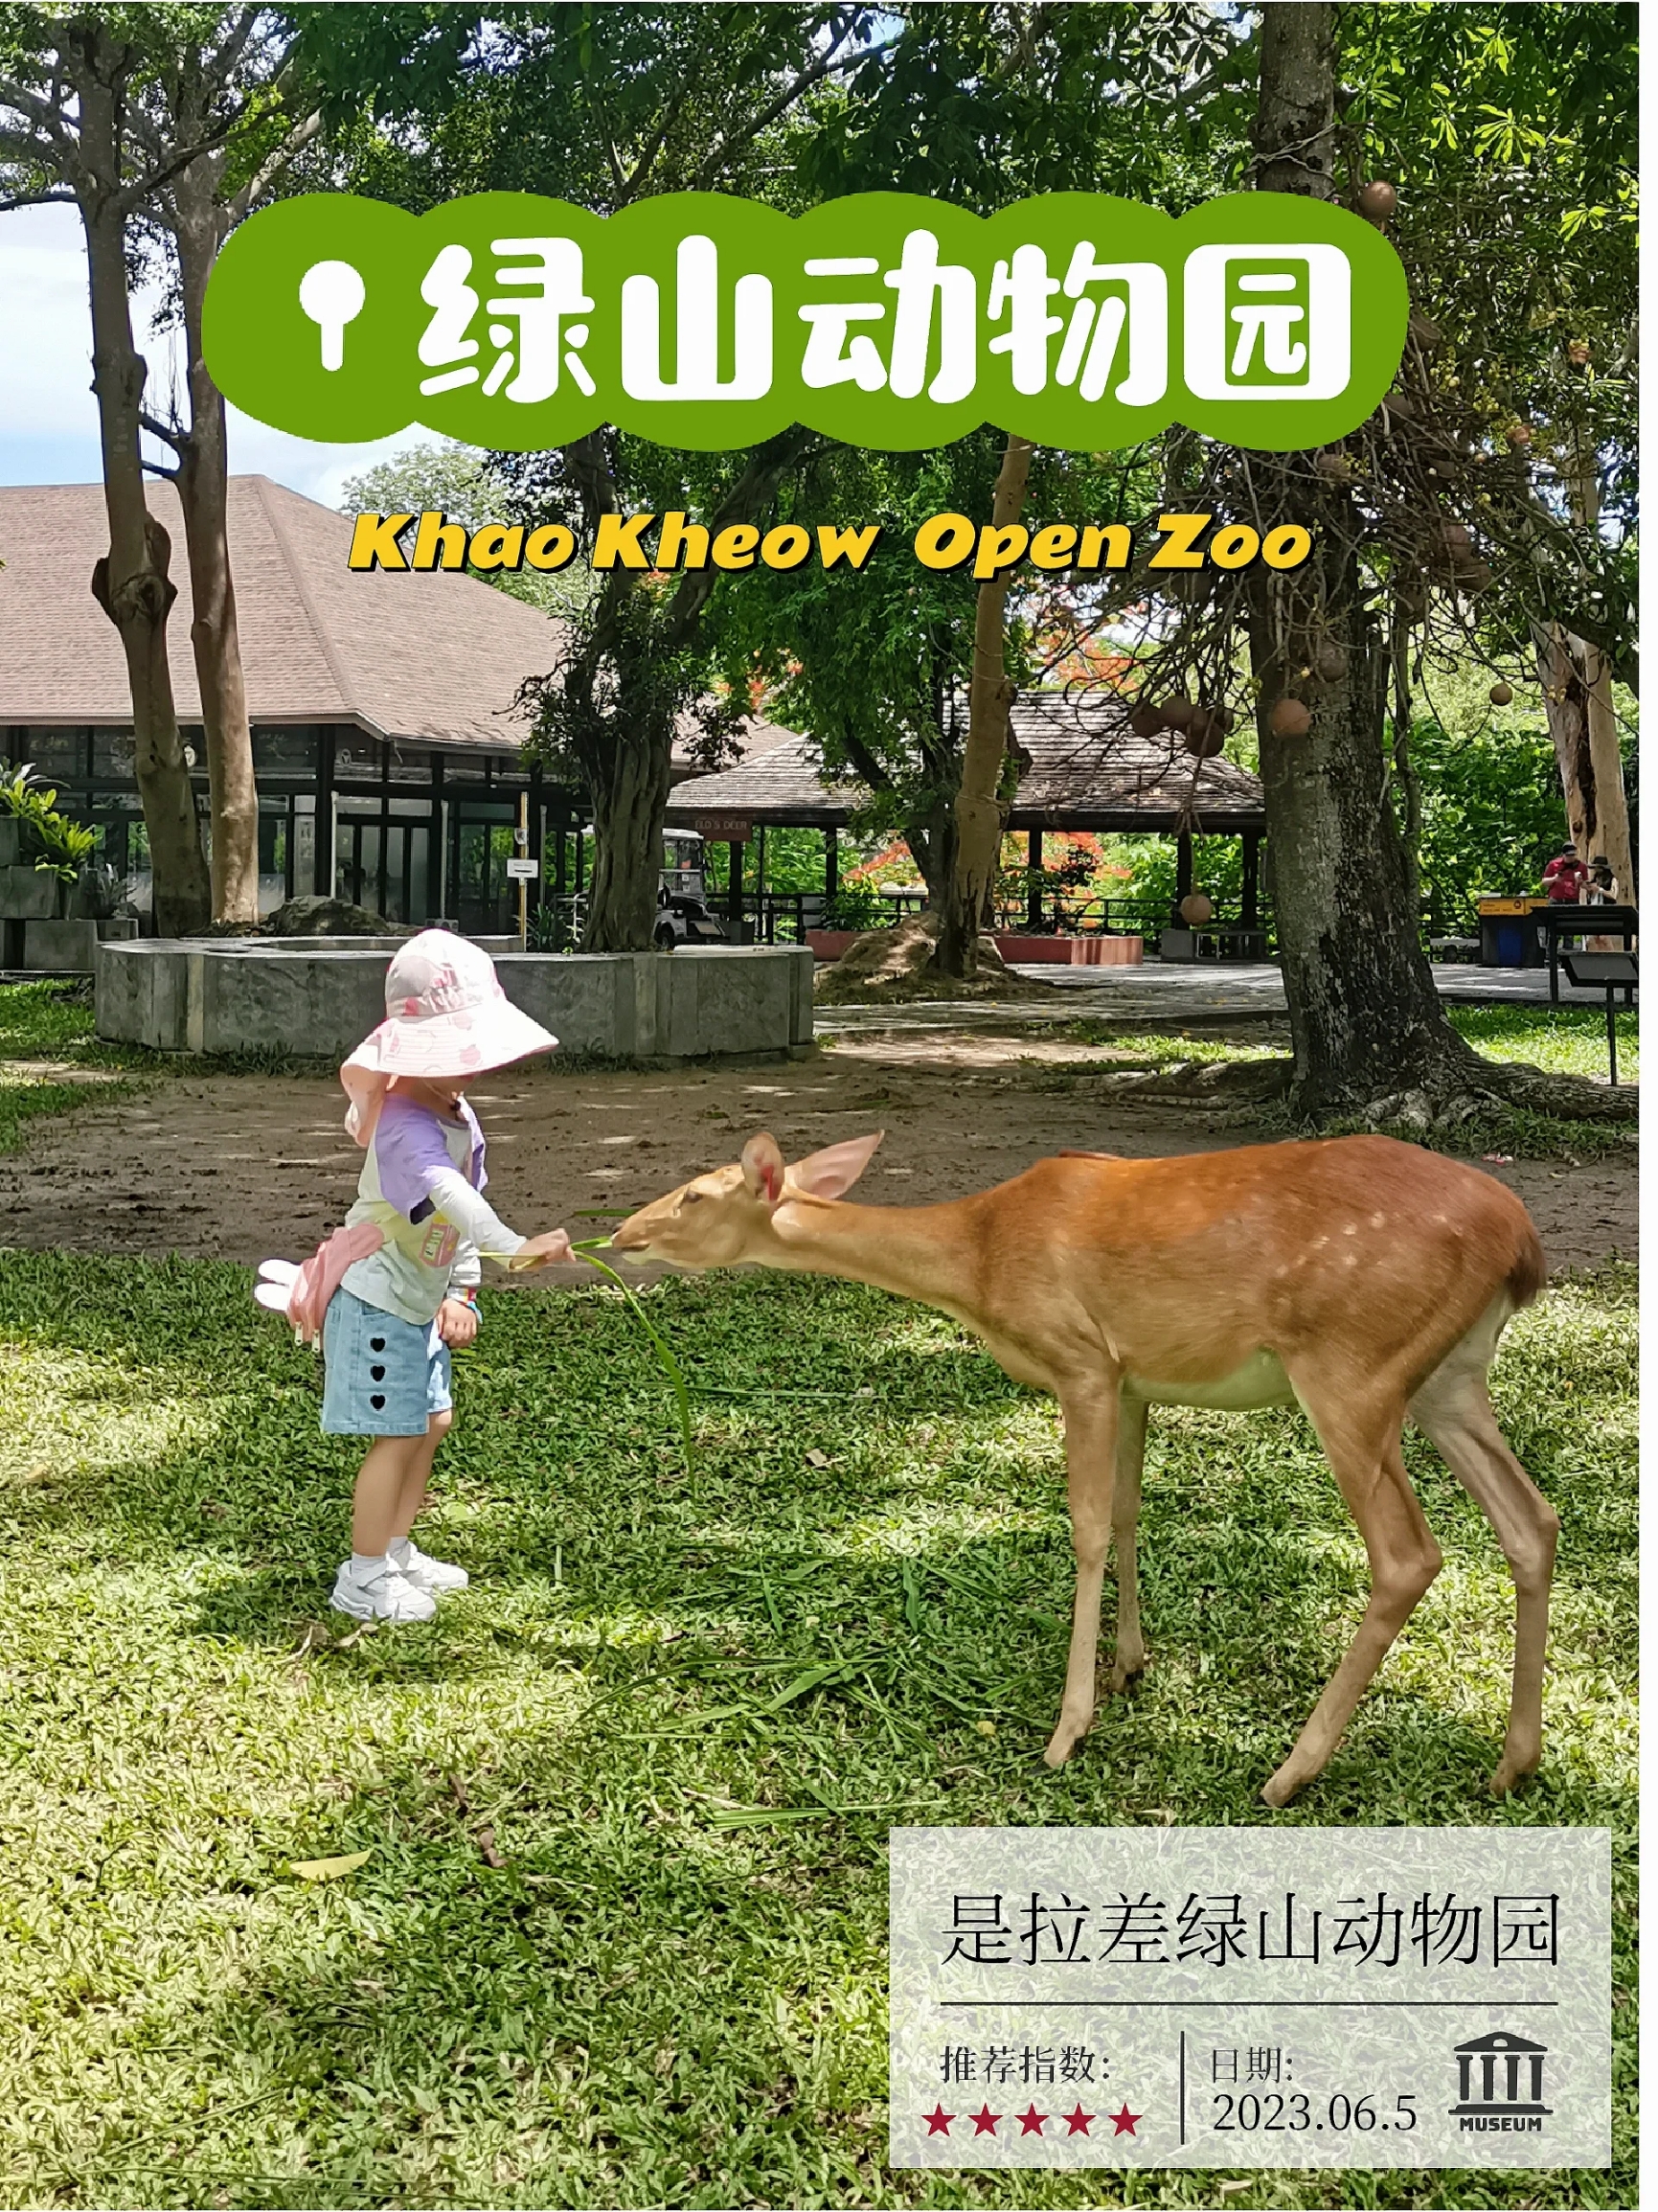 绿山开放动物园除了热没有其他缺点了吧带娃游泰国，在芭提雅回曼谷的路途中安排了位 于是拉差的绿山开放动